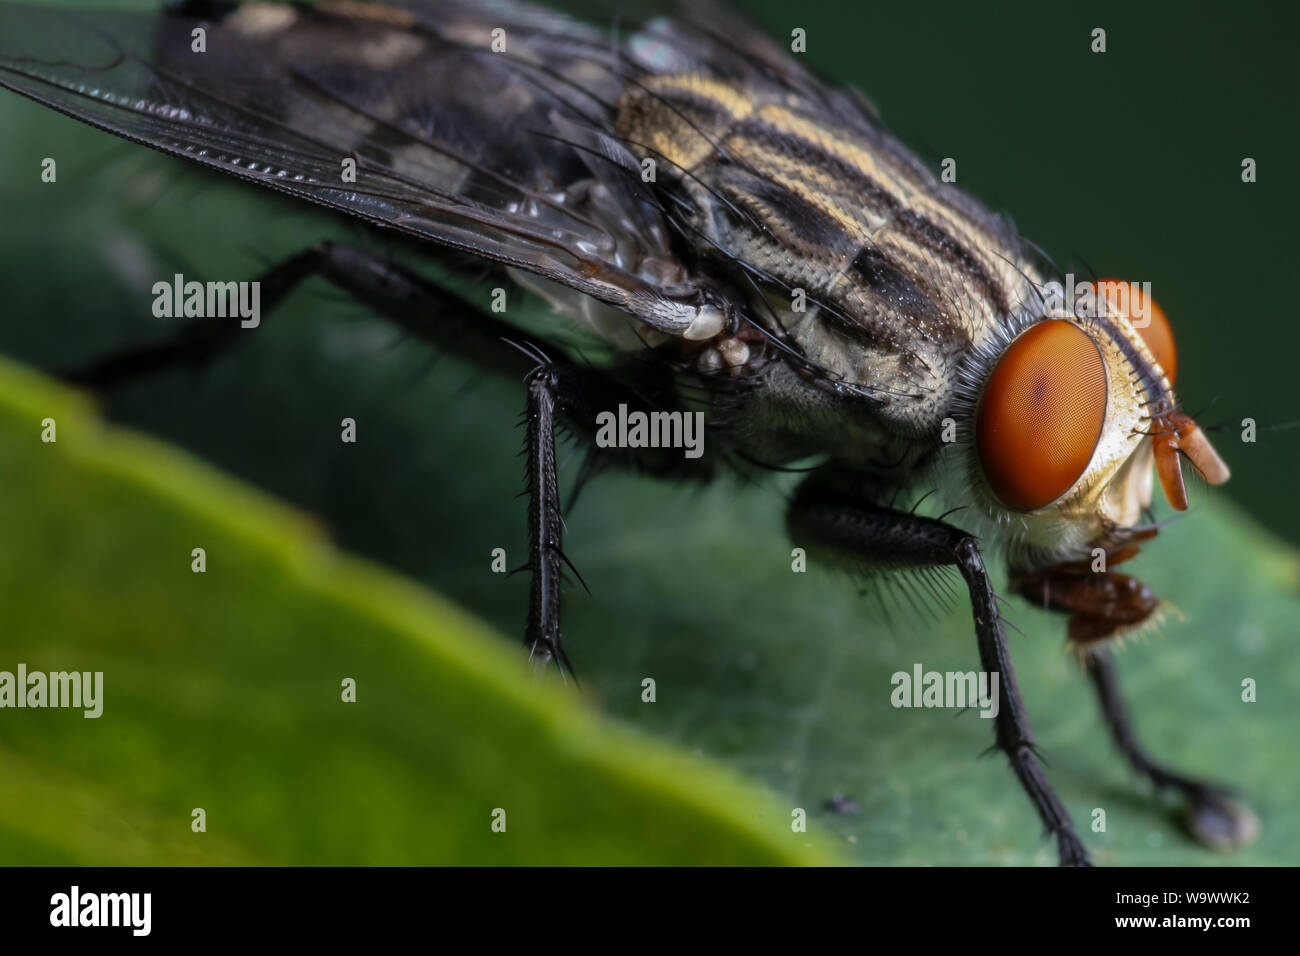 Alto Ingrandimento close-up di un giardino comune volare, che mostra la testa di insetto e gli occhi nei dettagli Foto Stock